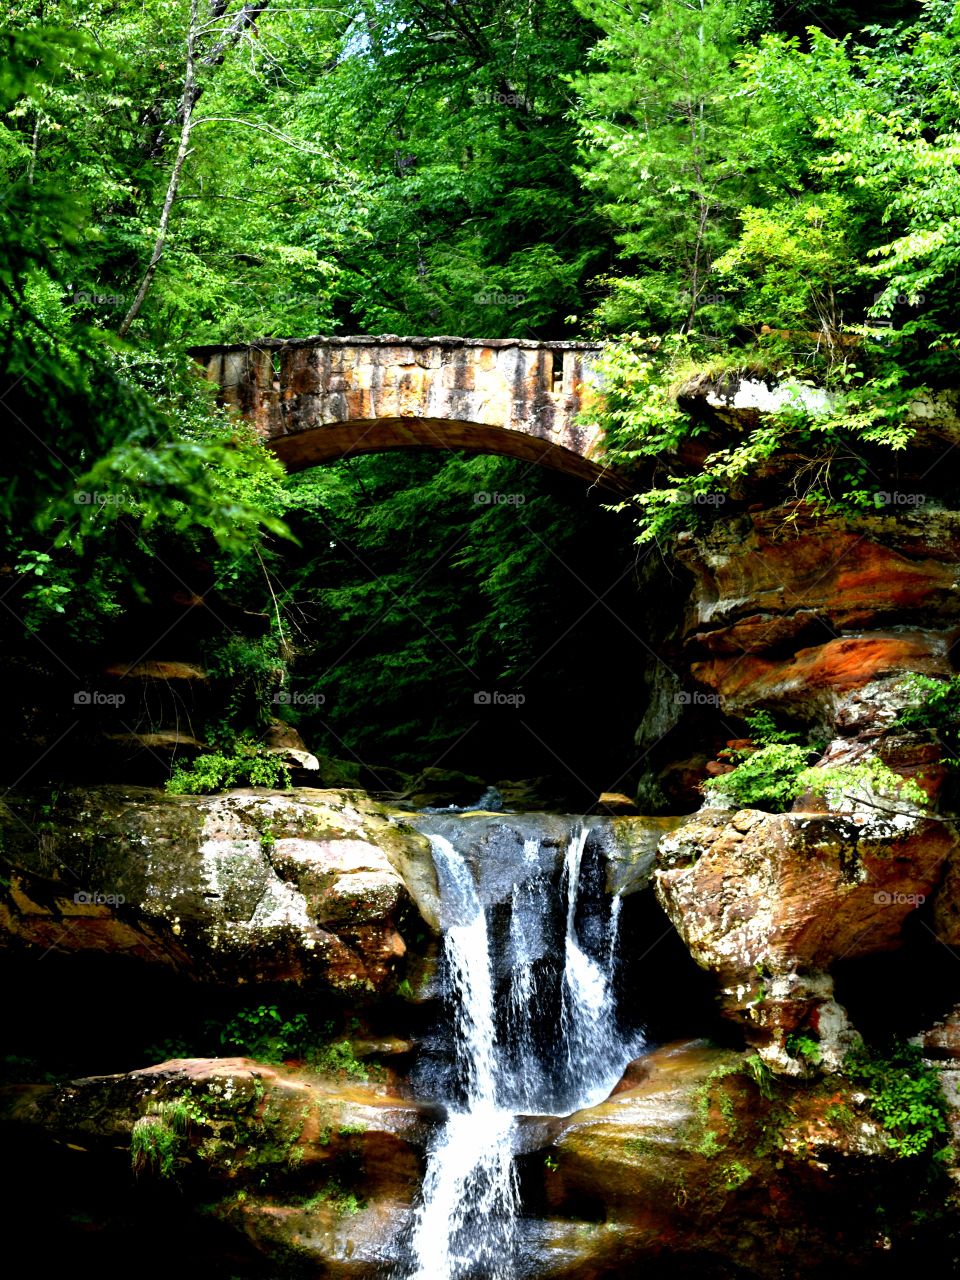 Hocking Hills Ohio State Park USA nature waterfall bridge trees